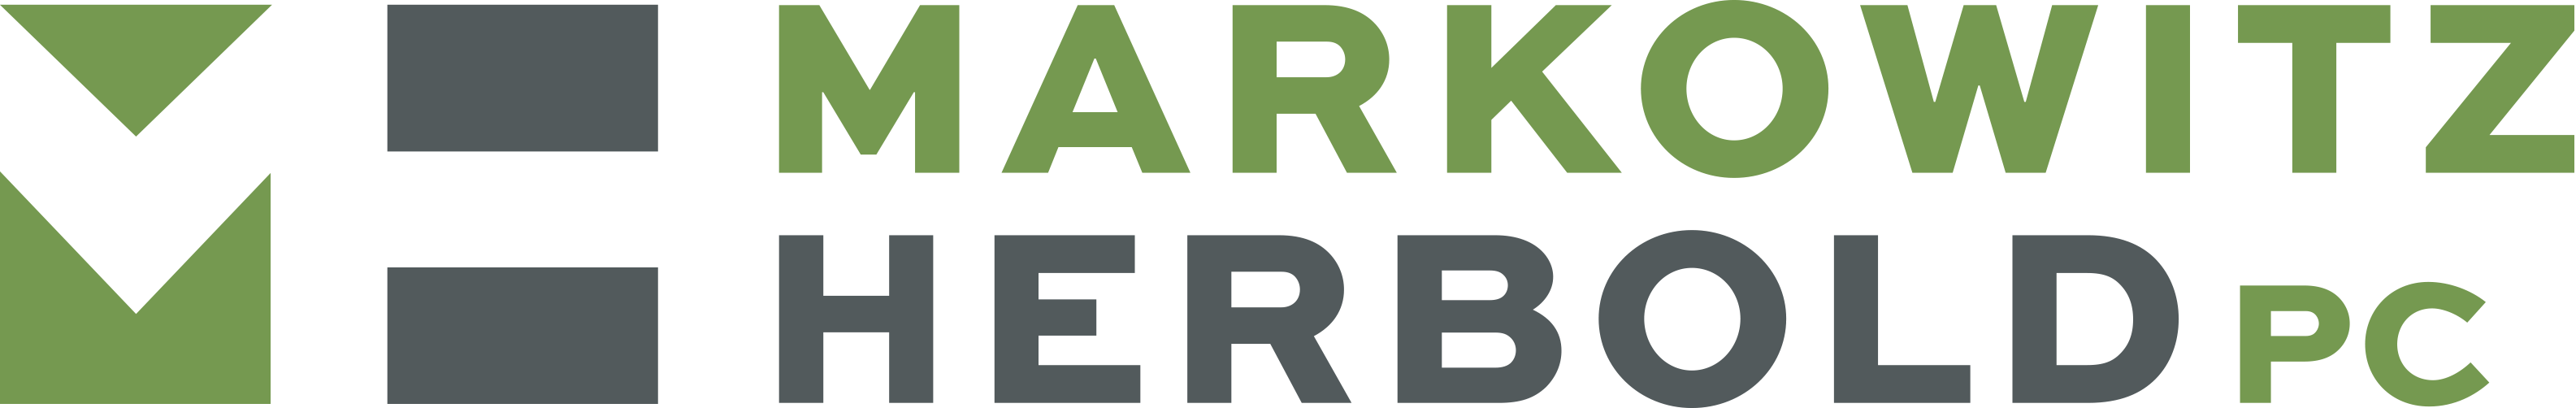 Markowitz Herbold PC logo